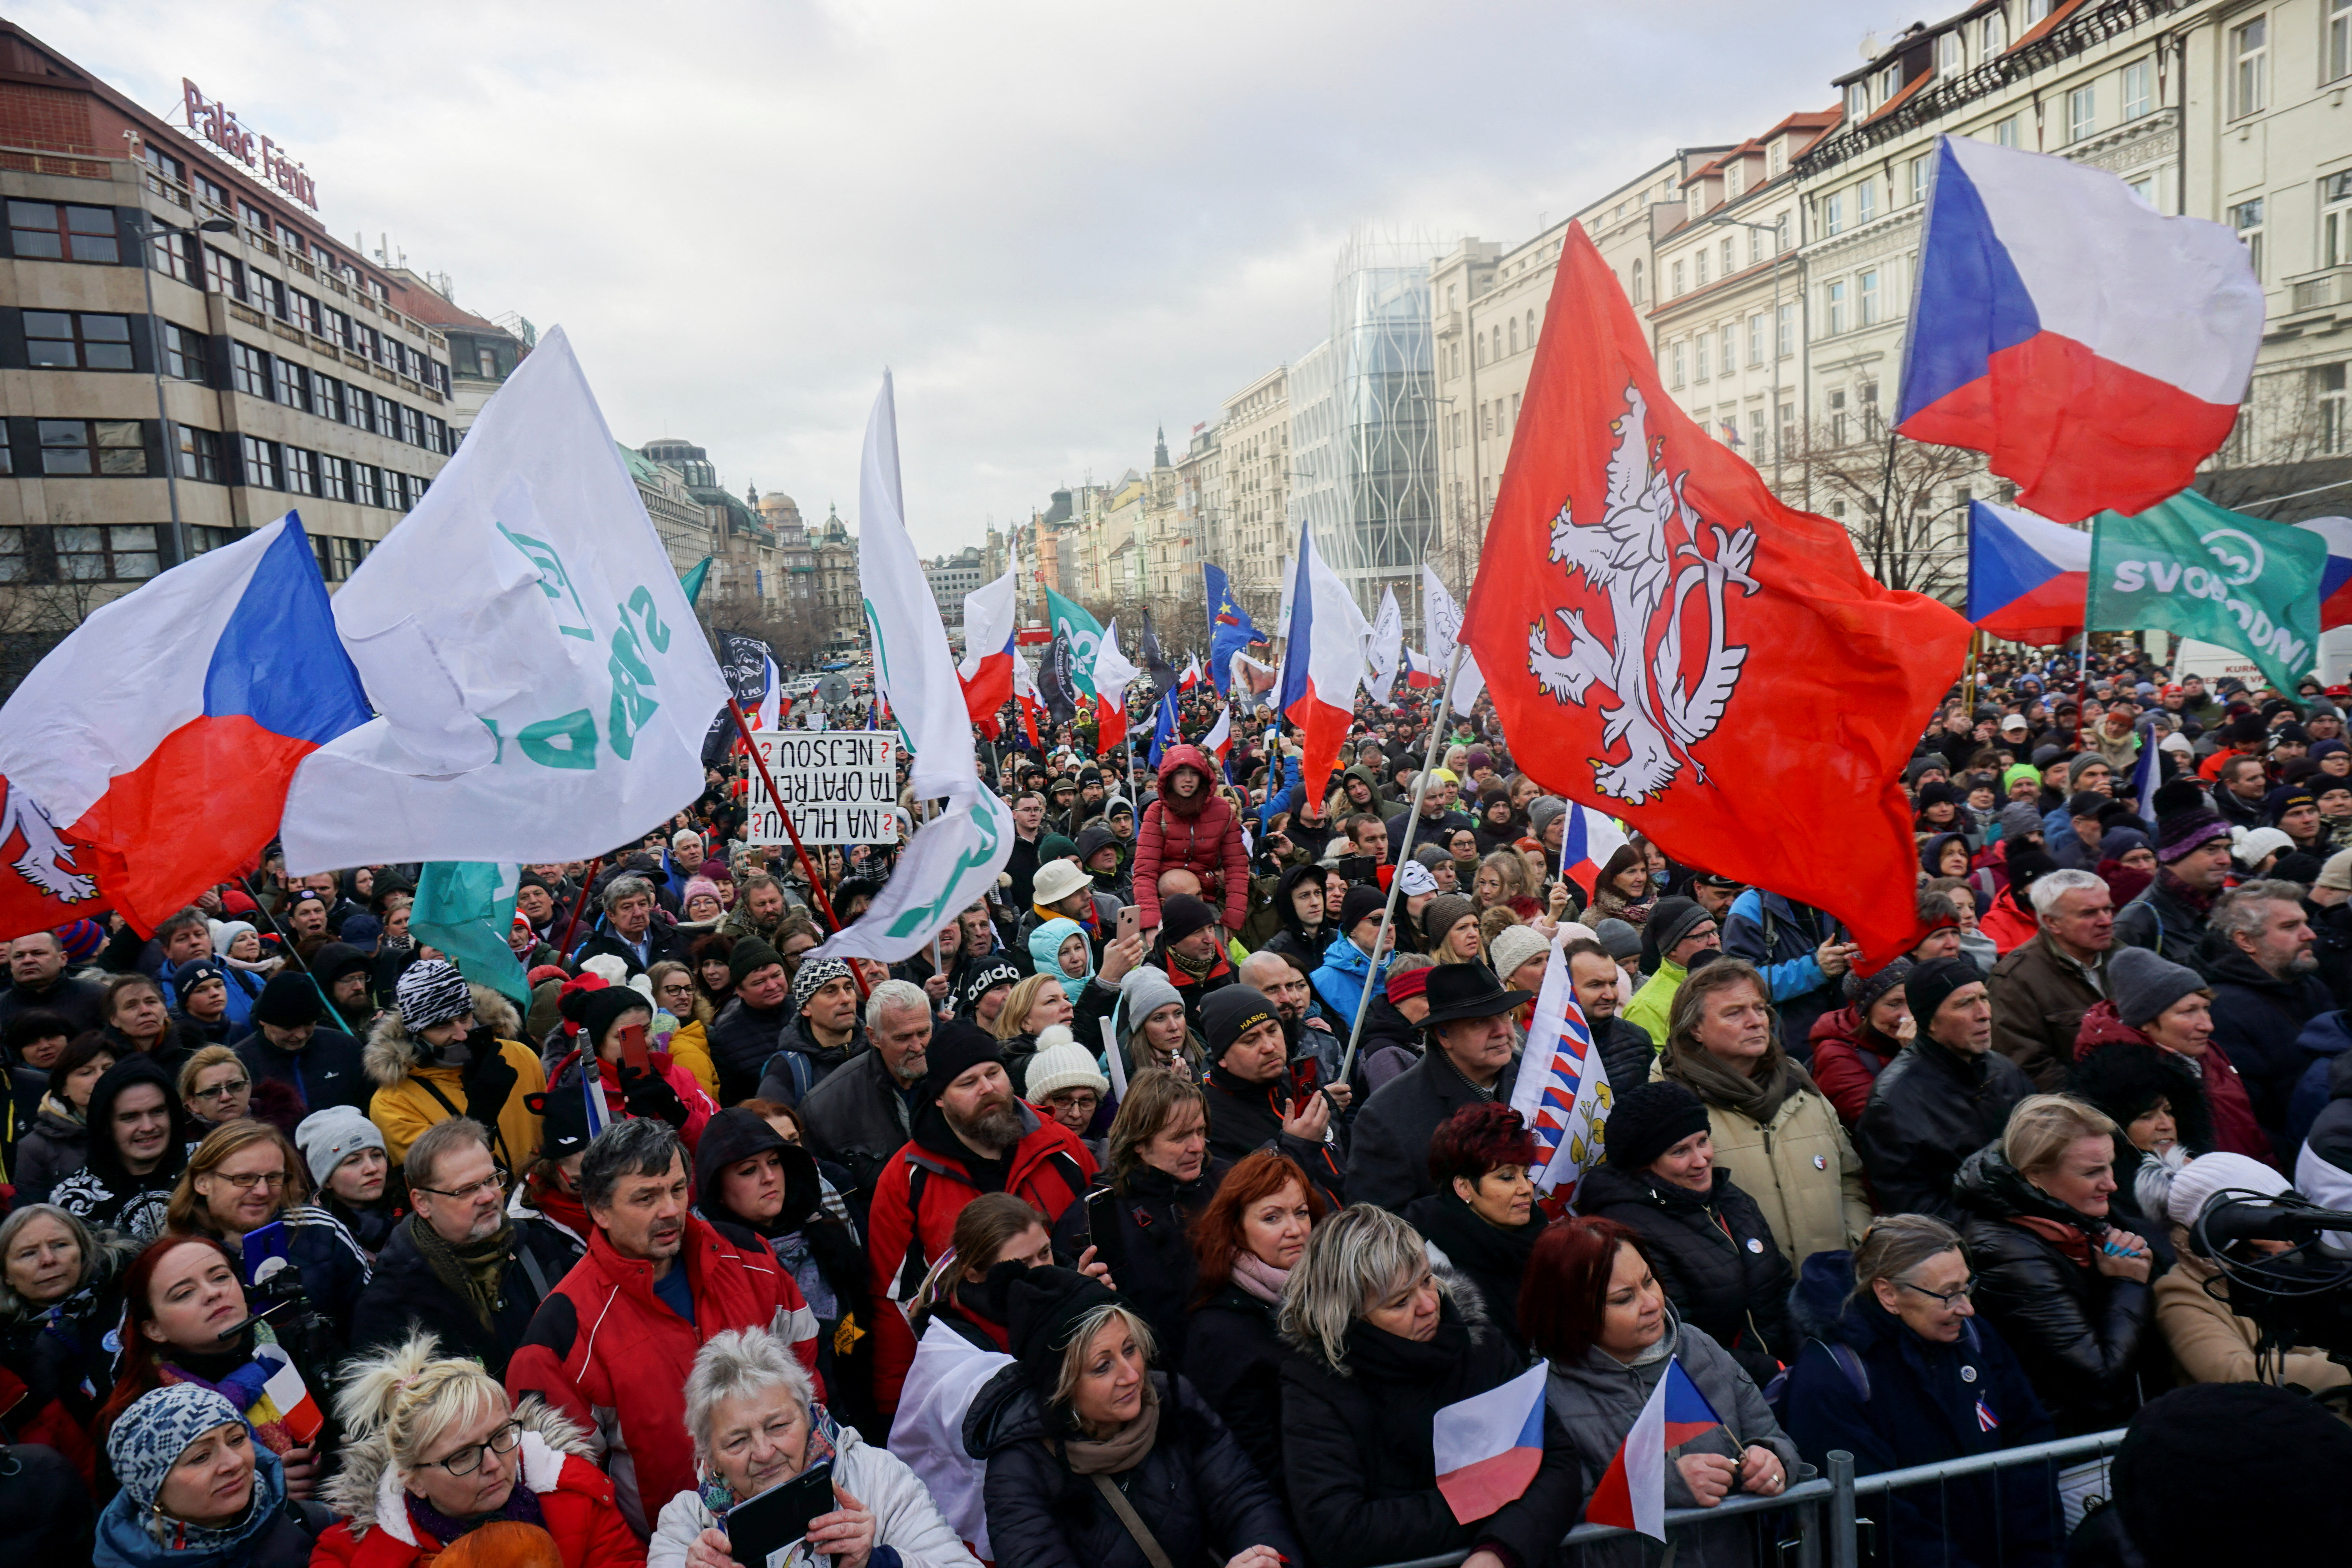 Διαδηλωτές κυματίζουν σημαίες κατά τη διάρκεια διαμαρτυρίας ενάντια στους περιορισμούς της τσεχικής κυβέρνησης που επιβλήθηκαν για τον περιορισμό της εξάπλωσης της νόσου του κοροναϊού (COVID-19) στην Πράγα, Δημοκρατία της Τσεχίας, 30 Ιανουαρίου 2022. REUTERS/Jiri Skacel